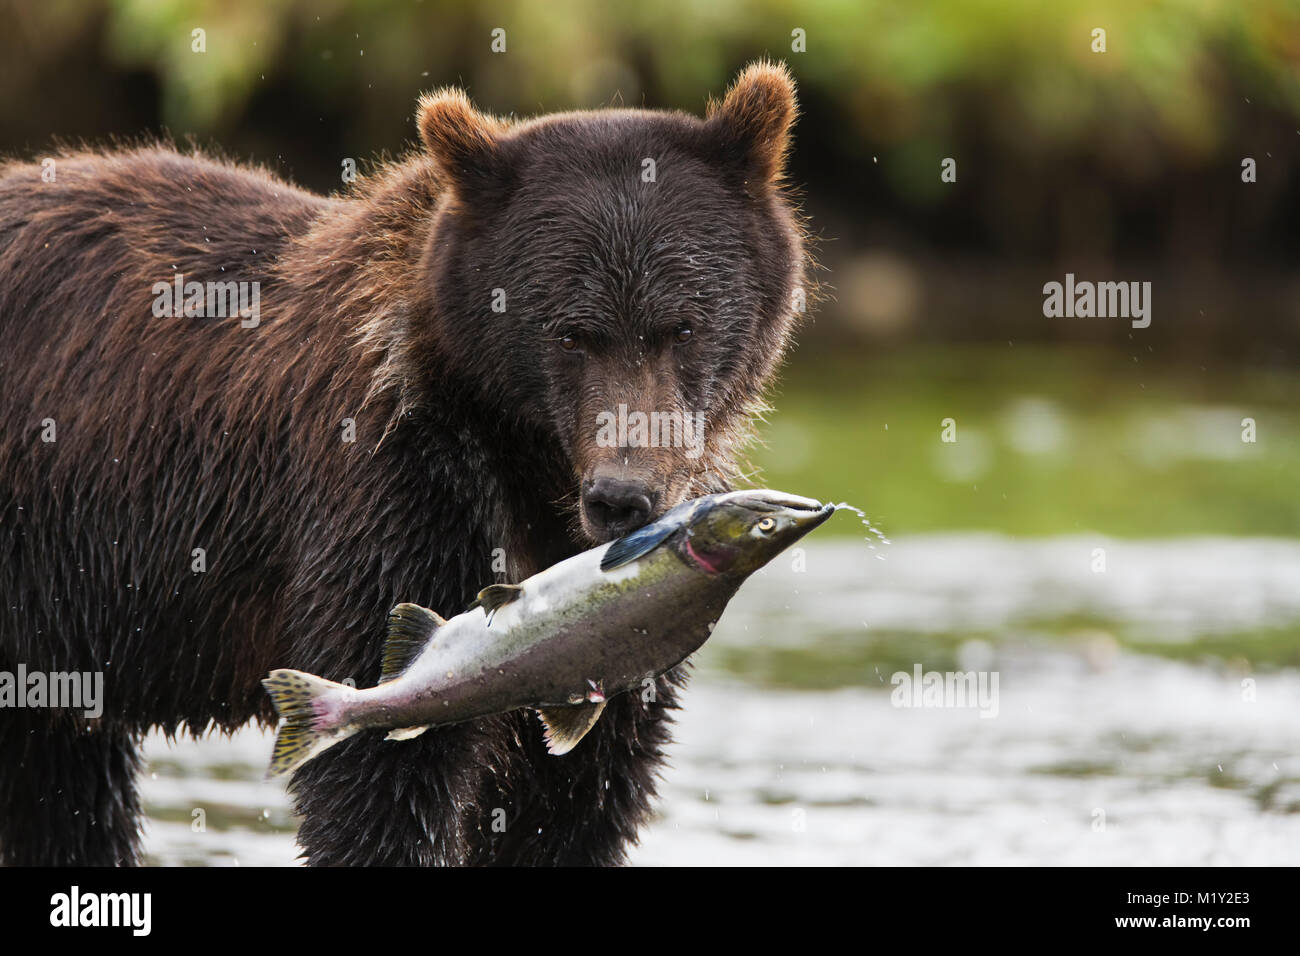 Un ours brun se nourrit de la fraie du saumon rose saumon dans un ruisseau dans le port de l'île de l'amirauté d'Aubaine National Monument dans le sud-est de l'Alaska. Banque D'Images